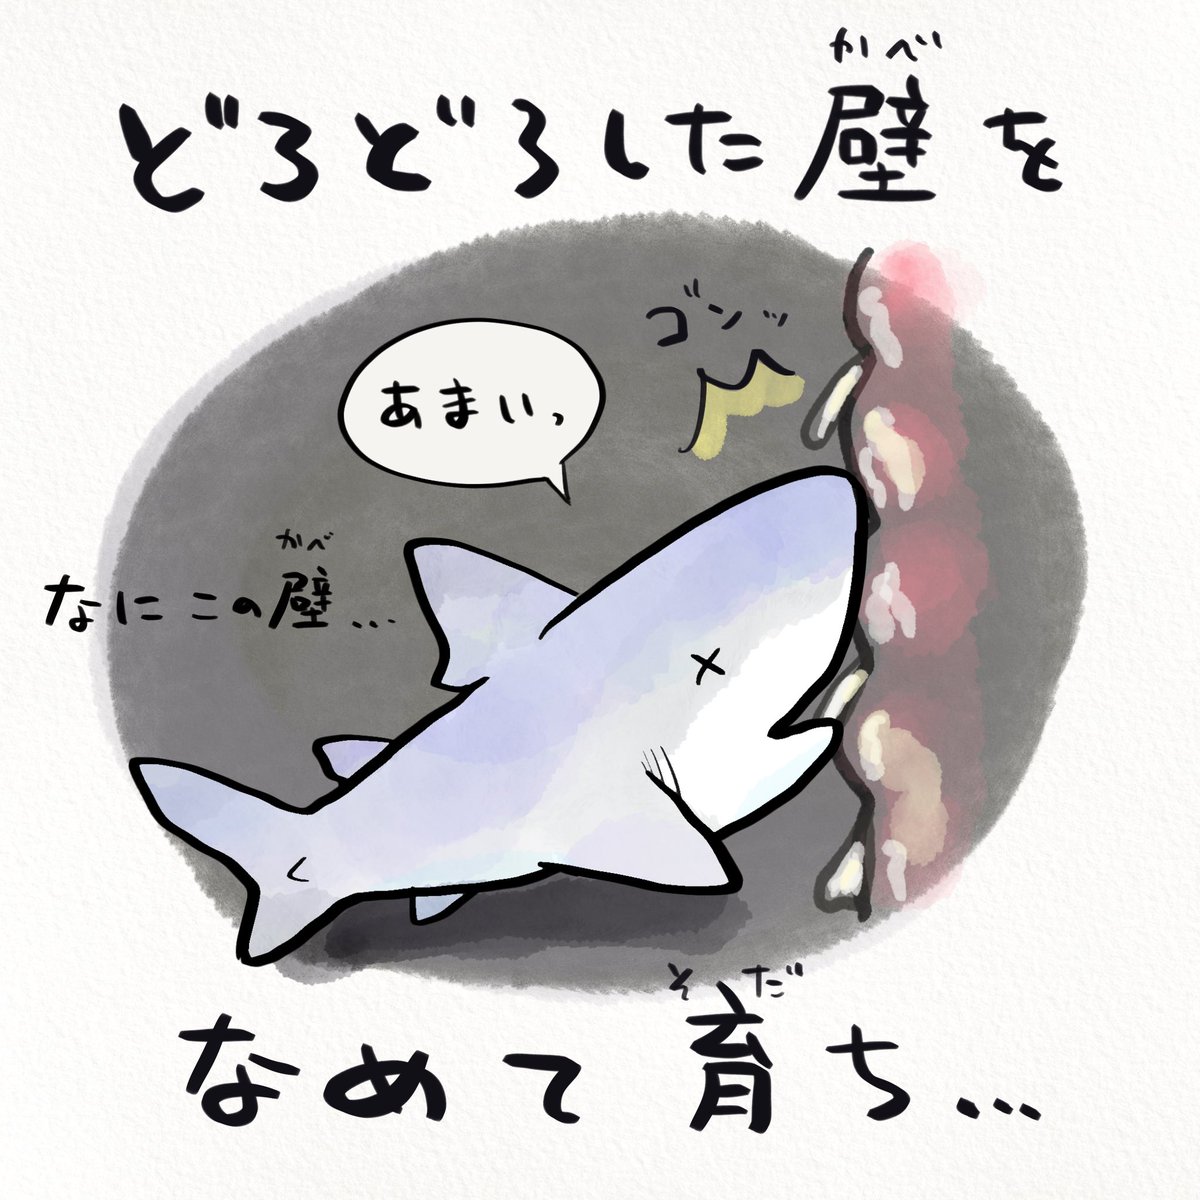 圖文翻譯 - 大白鯊在子宮內的生活 EcZHOeRU8AImPg0